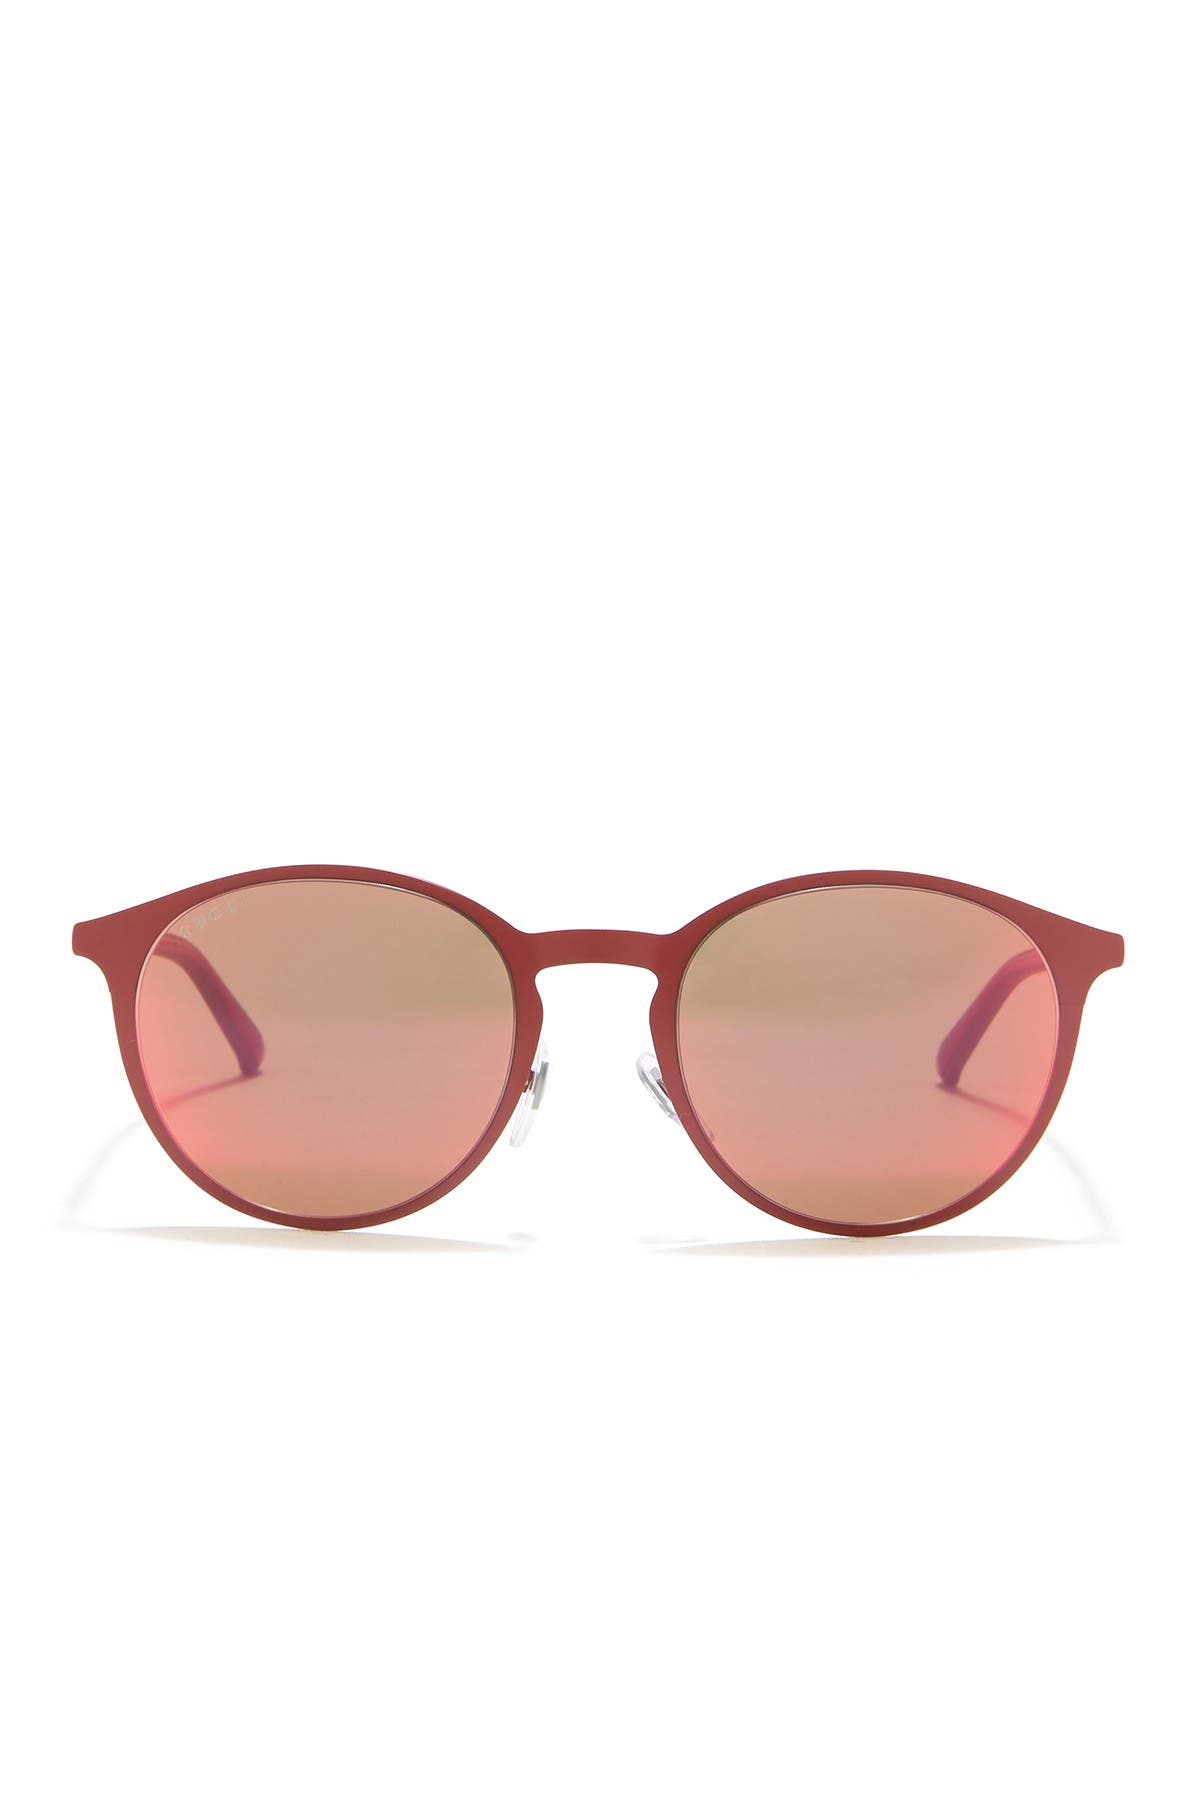 gucci white round sunglasses